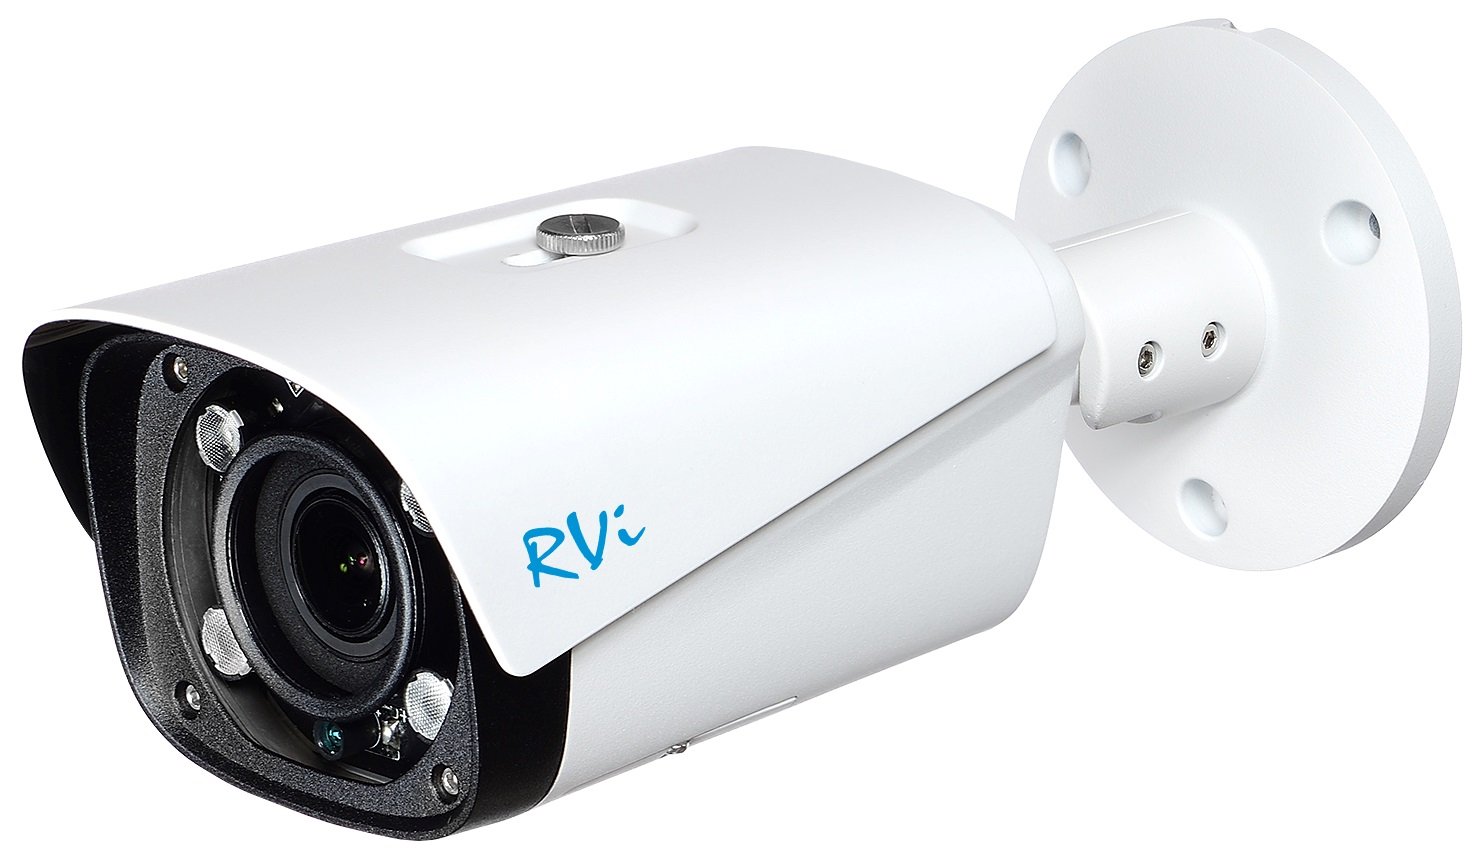 RVi-1NCT4043 (2.7-13.5) white - купить в интернет магазине с доставкой, цены, описание, характеристики, отзывы